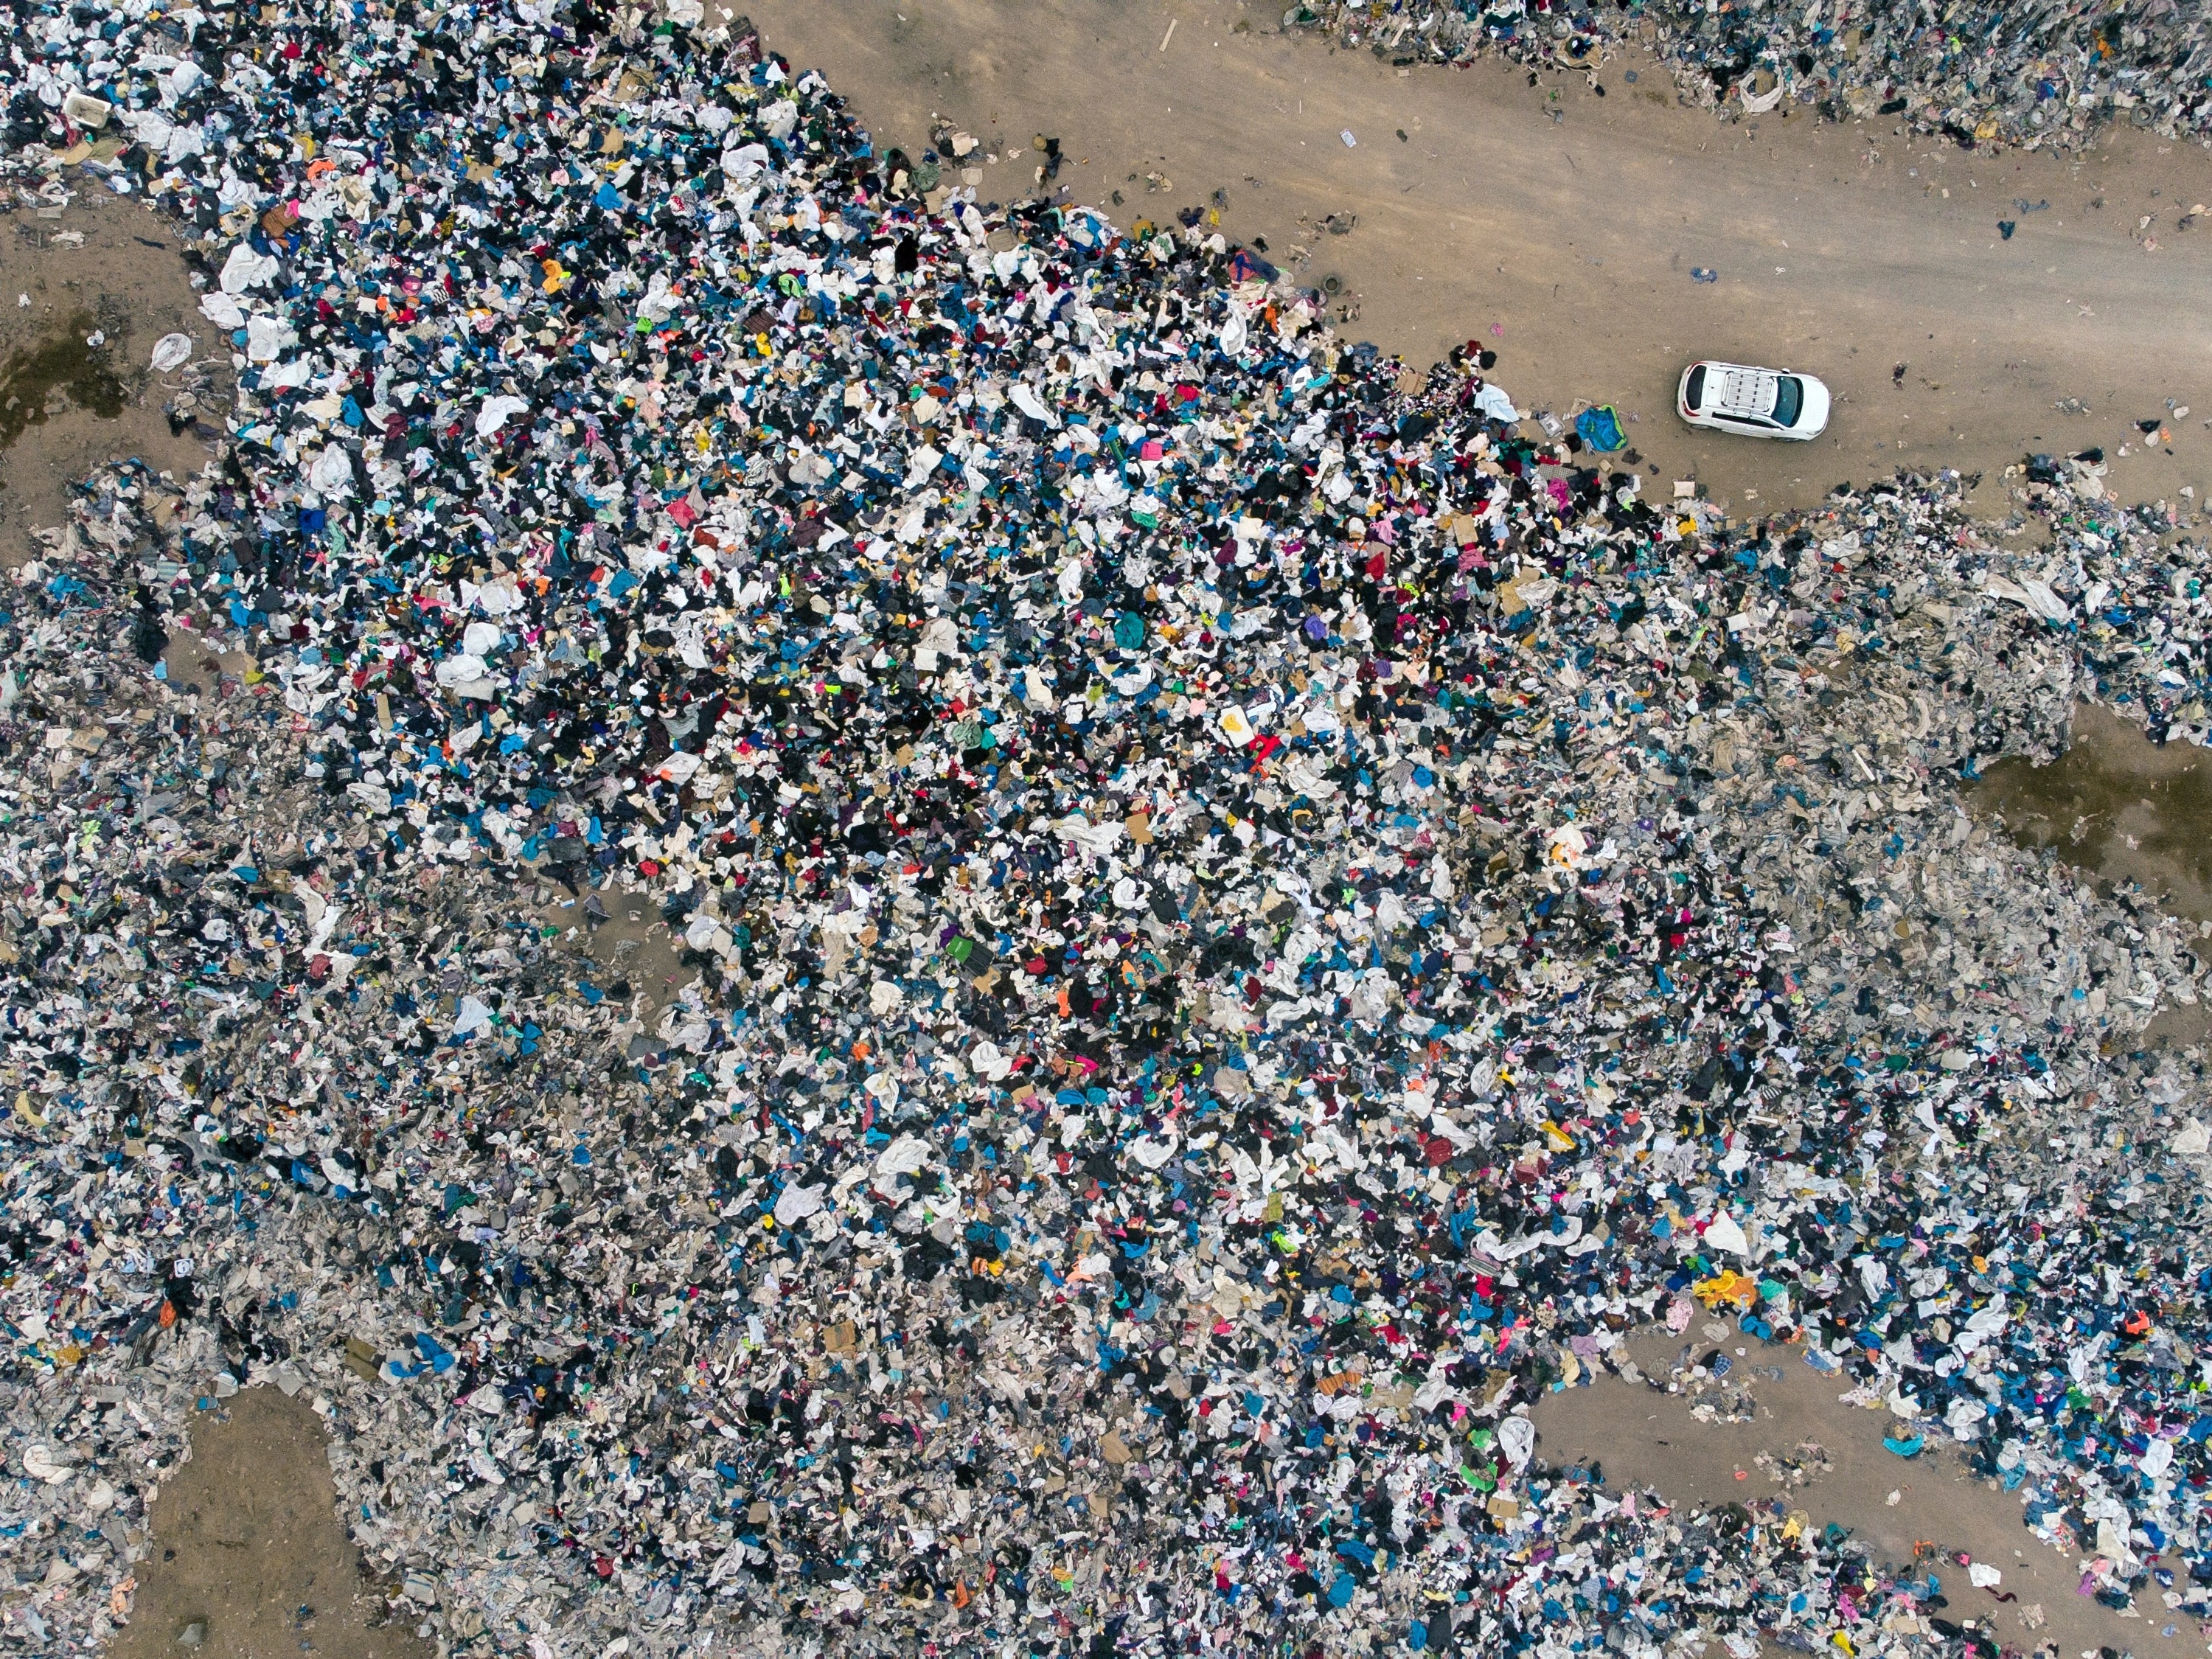 Own Premise To meditation Chile investiga lixão de roupas usadas no Atacama por dano ambiental